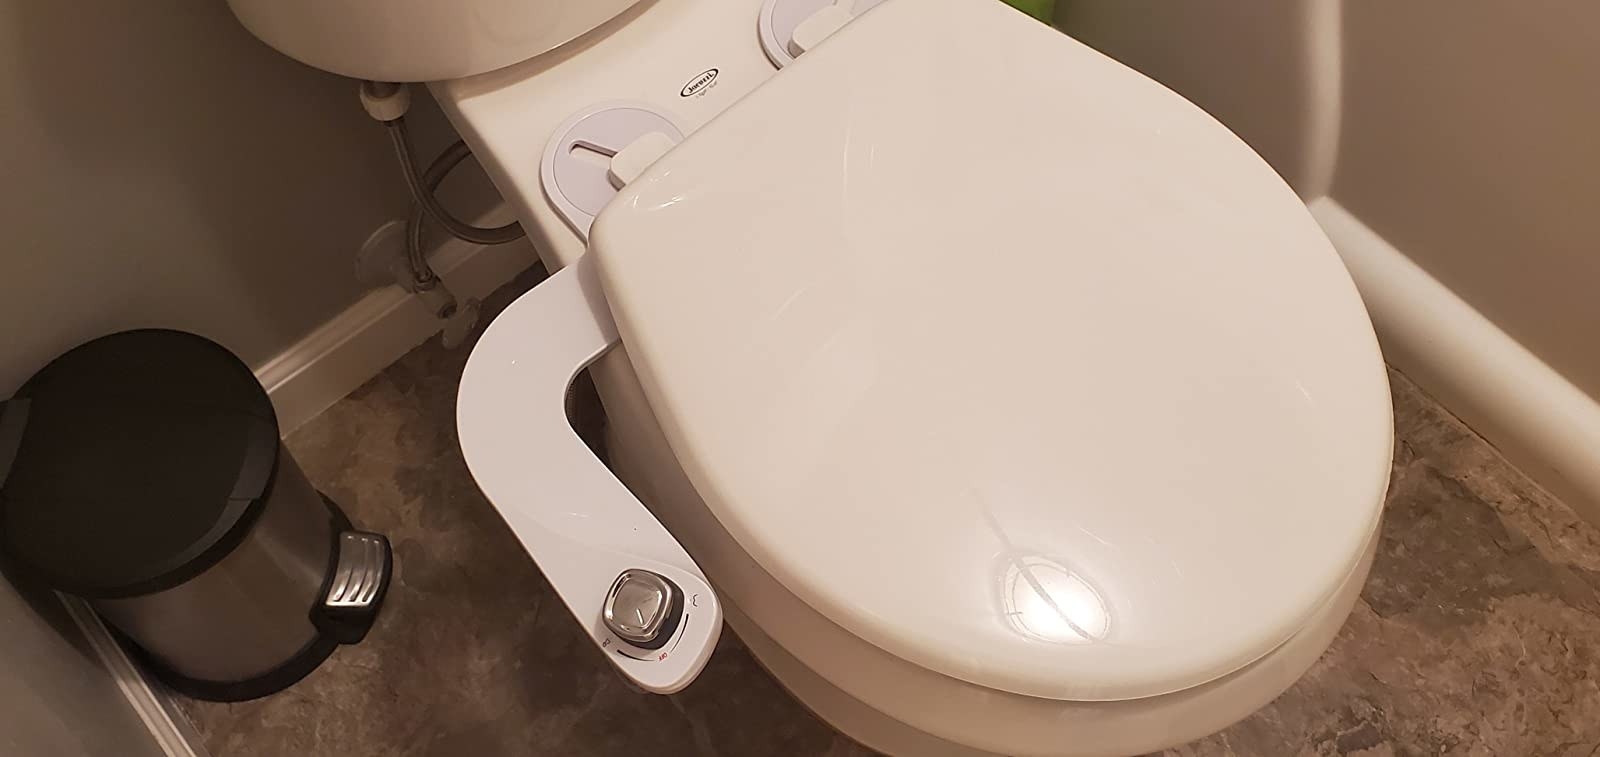 the white bidet attachment on a toilet